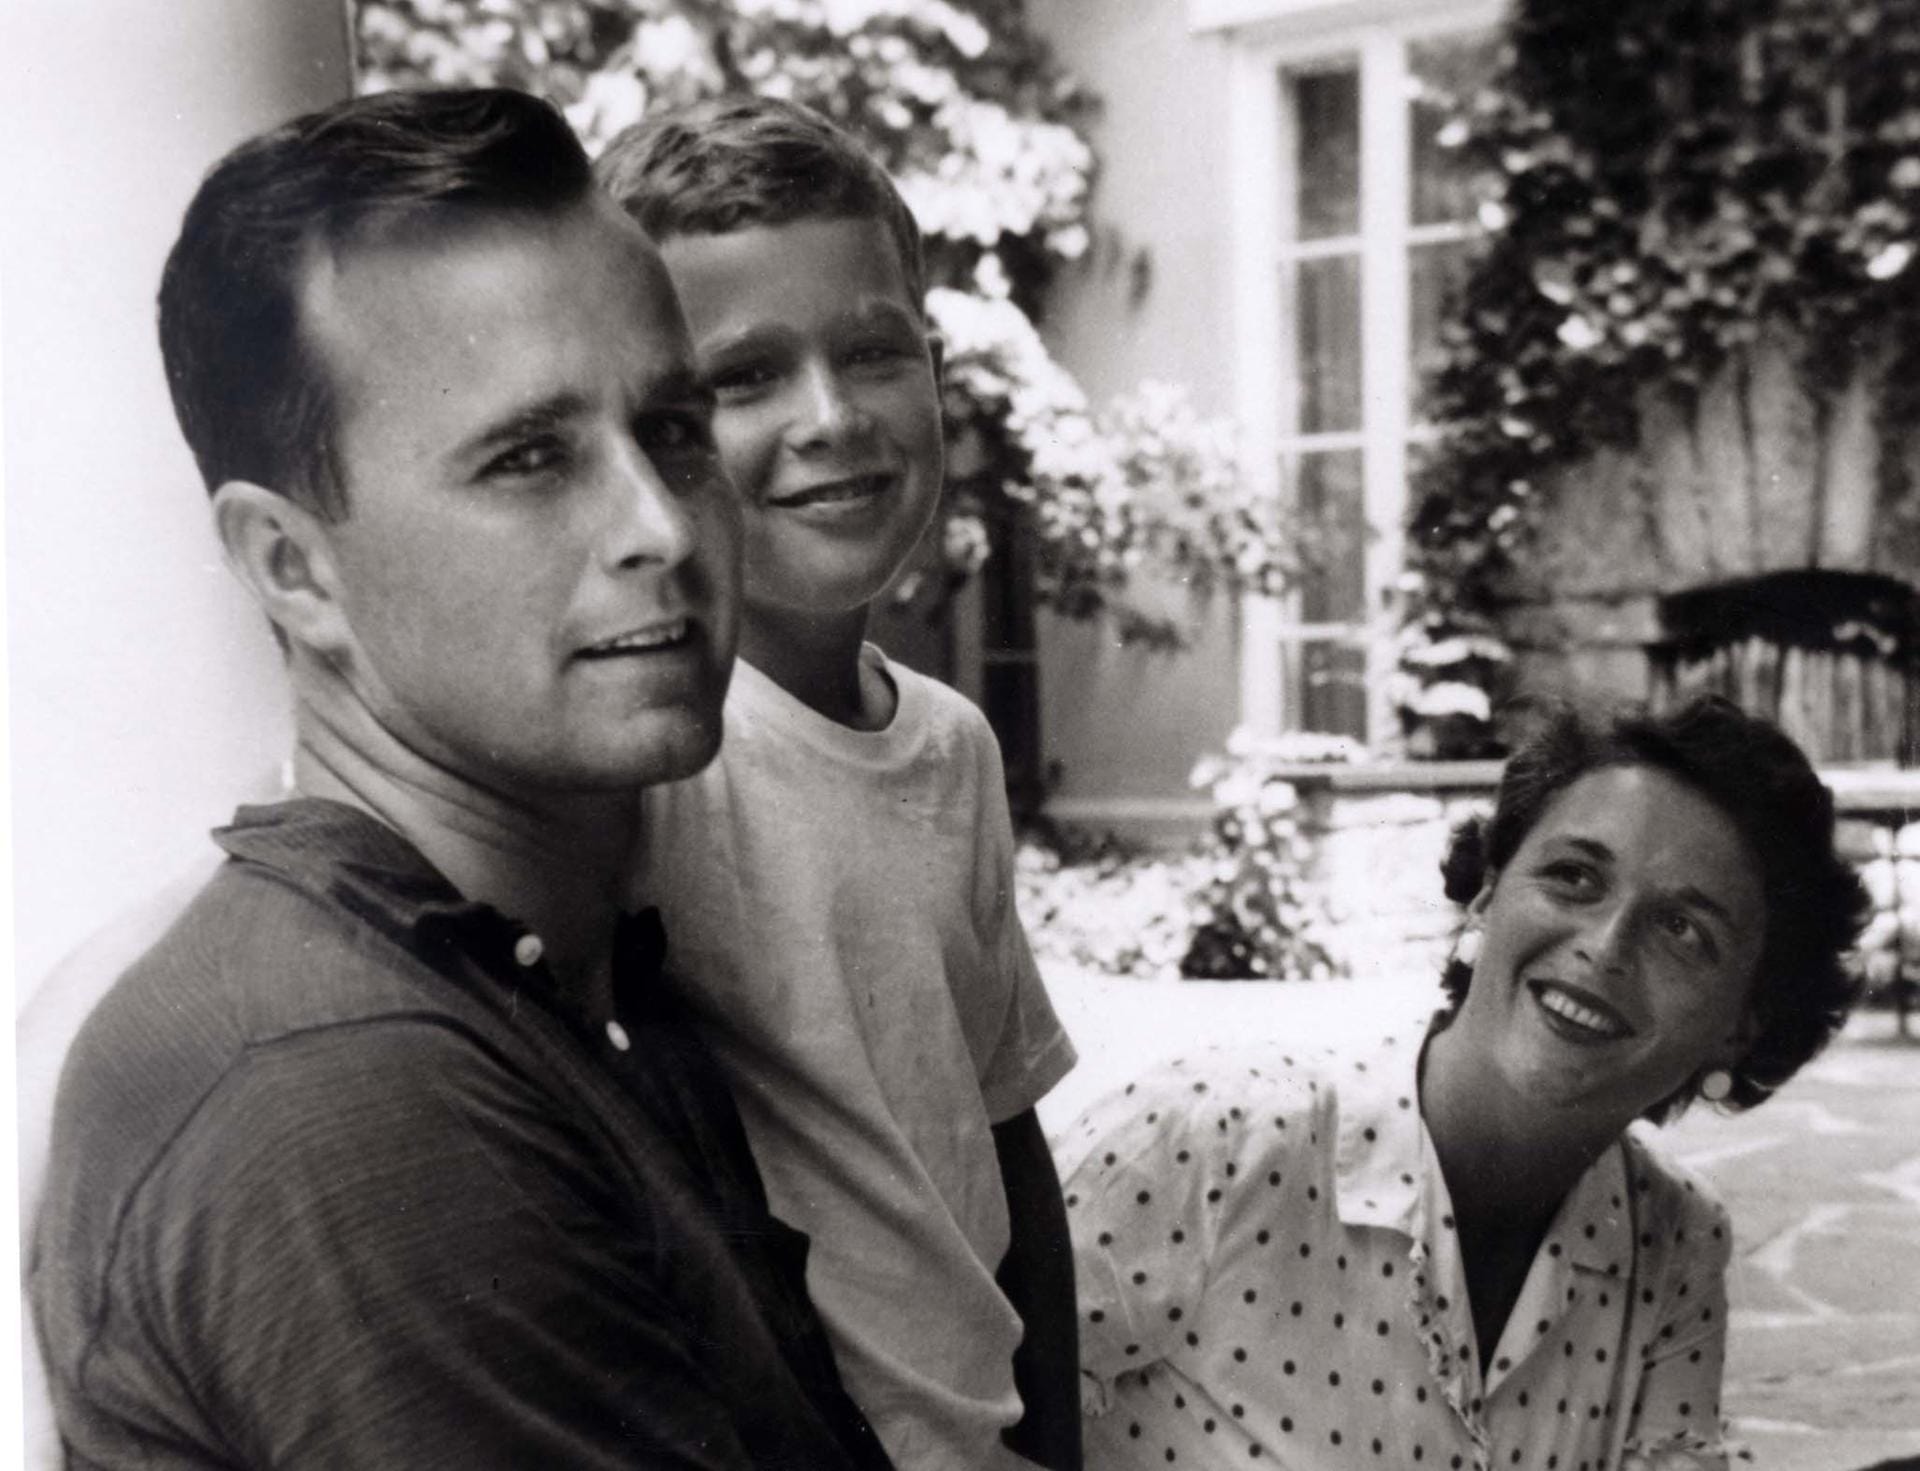 Zwei künftige US-Präsidenten auf einem Bild: Die Aufnahme zeigt Bush und seine Ehefrau mit ihrem ersten Sohn, dem damals neunjährigen George W. Bush im Sommer 1955.